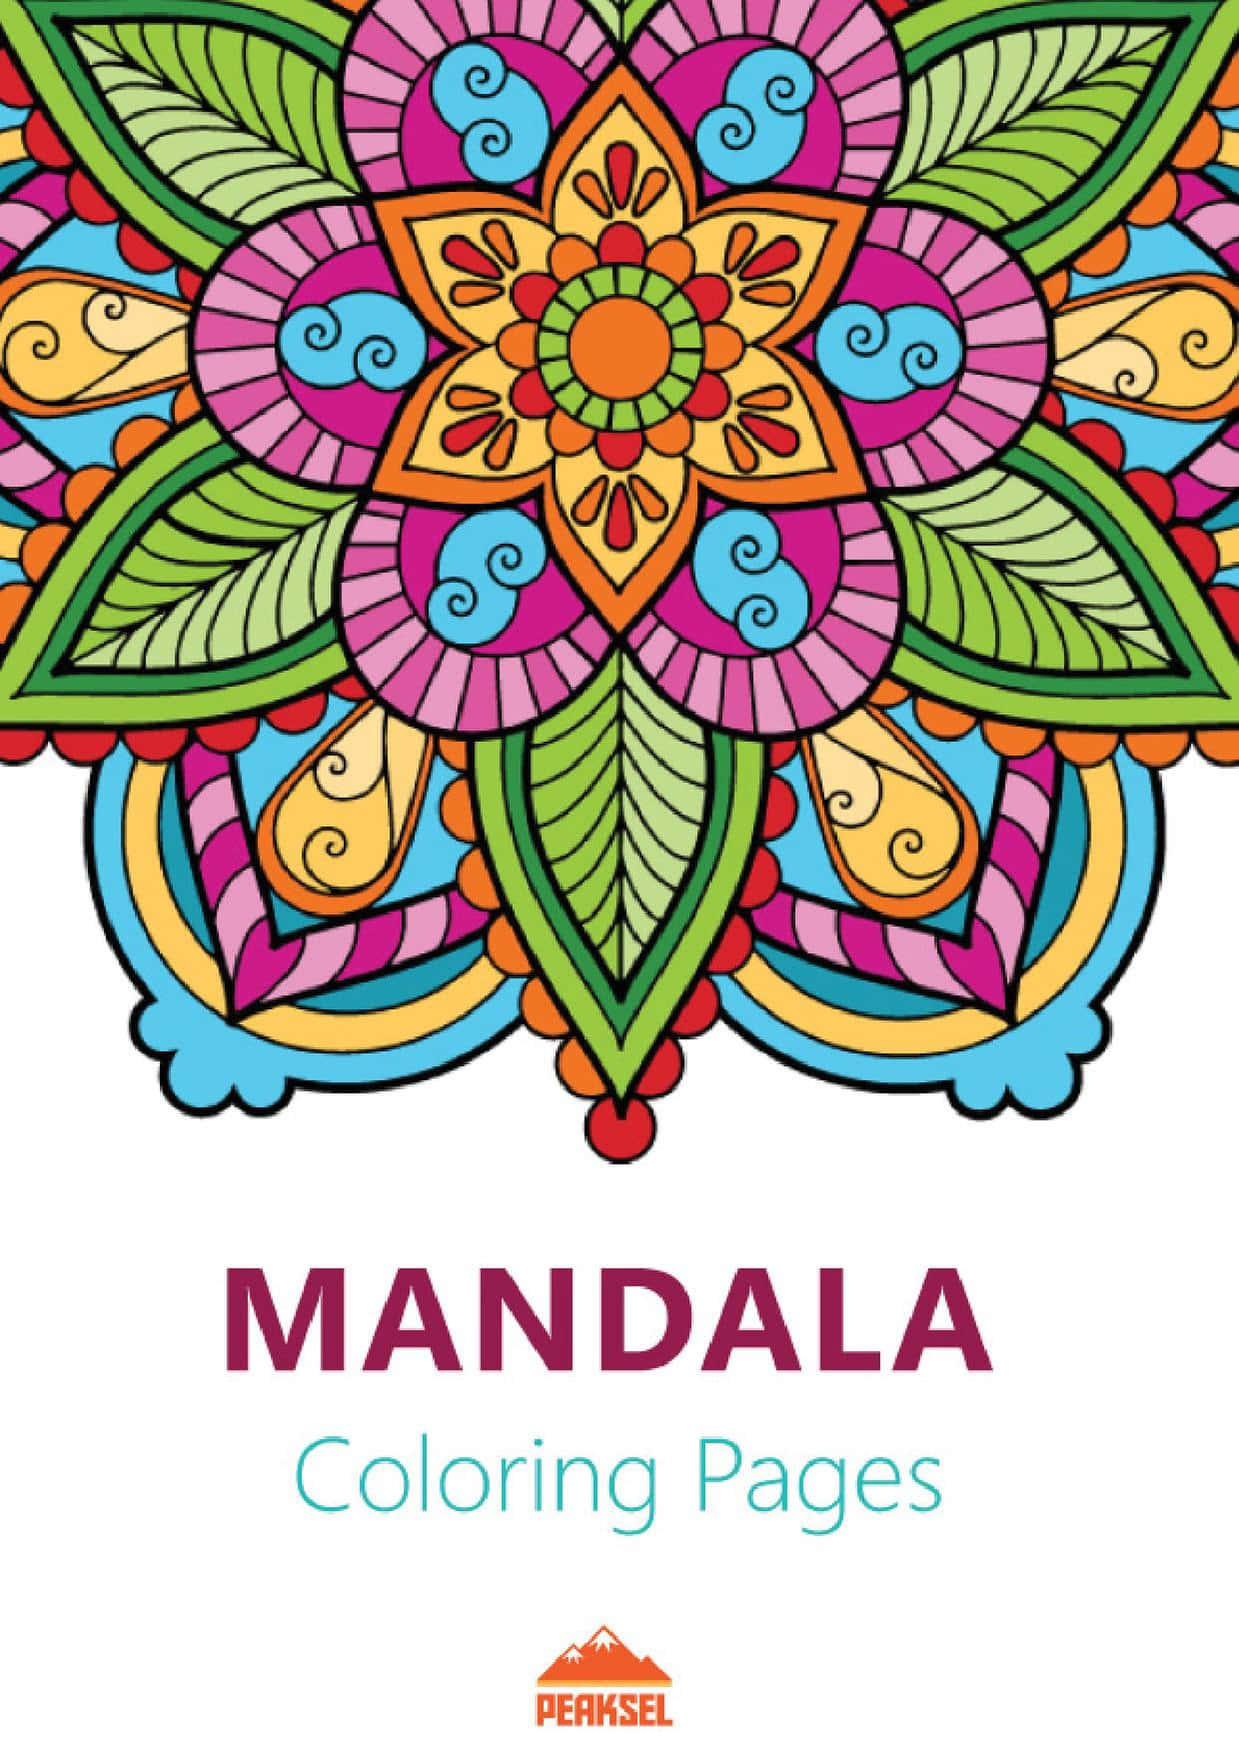 Mandala, symbolsk repræsentation af et univers